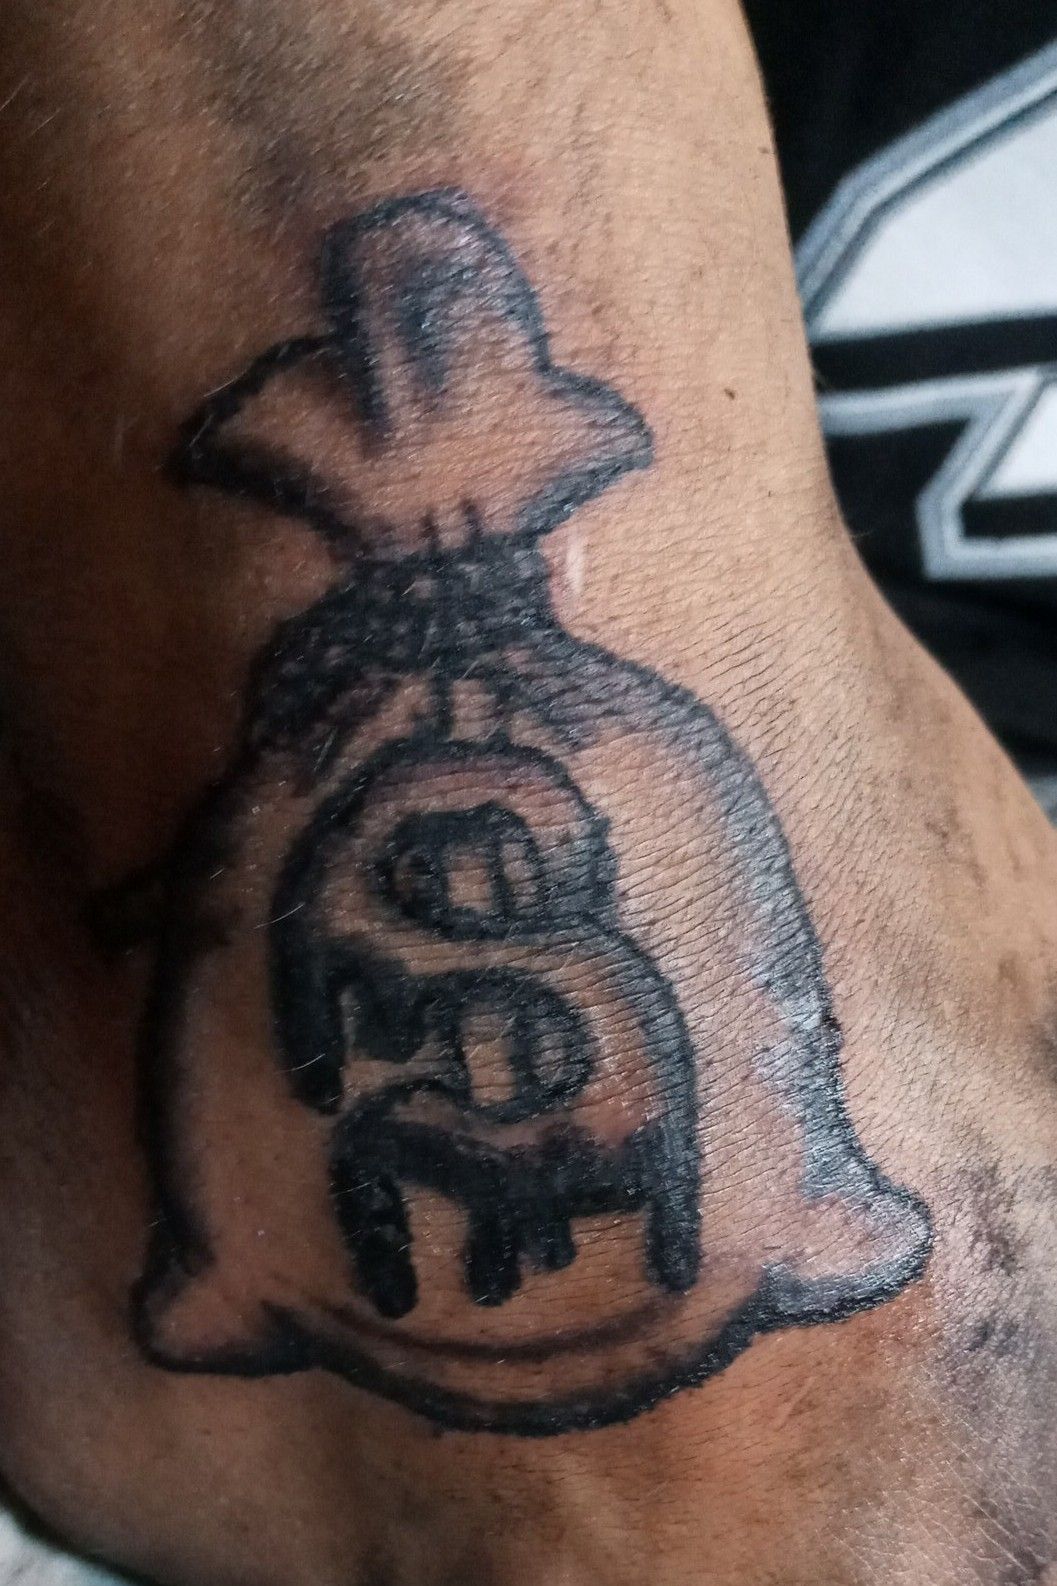 Untitled on Tumblr: Mr money bag #tattoo #tattoos #tattedup #tattooing # tattooed #m4lvip #m4l #marked4life #miami #kendalltattoos #miamitattoo...